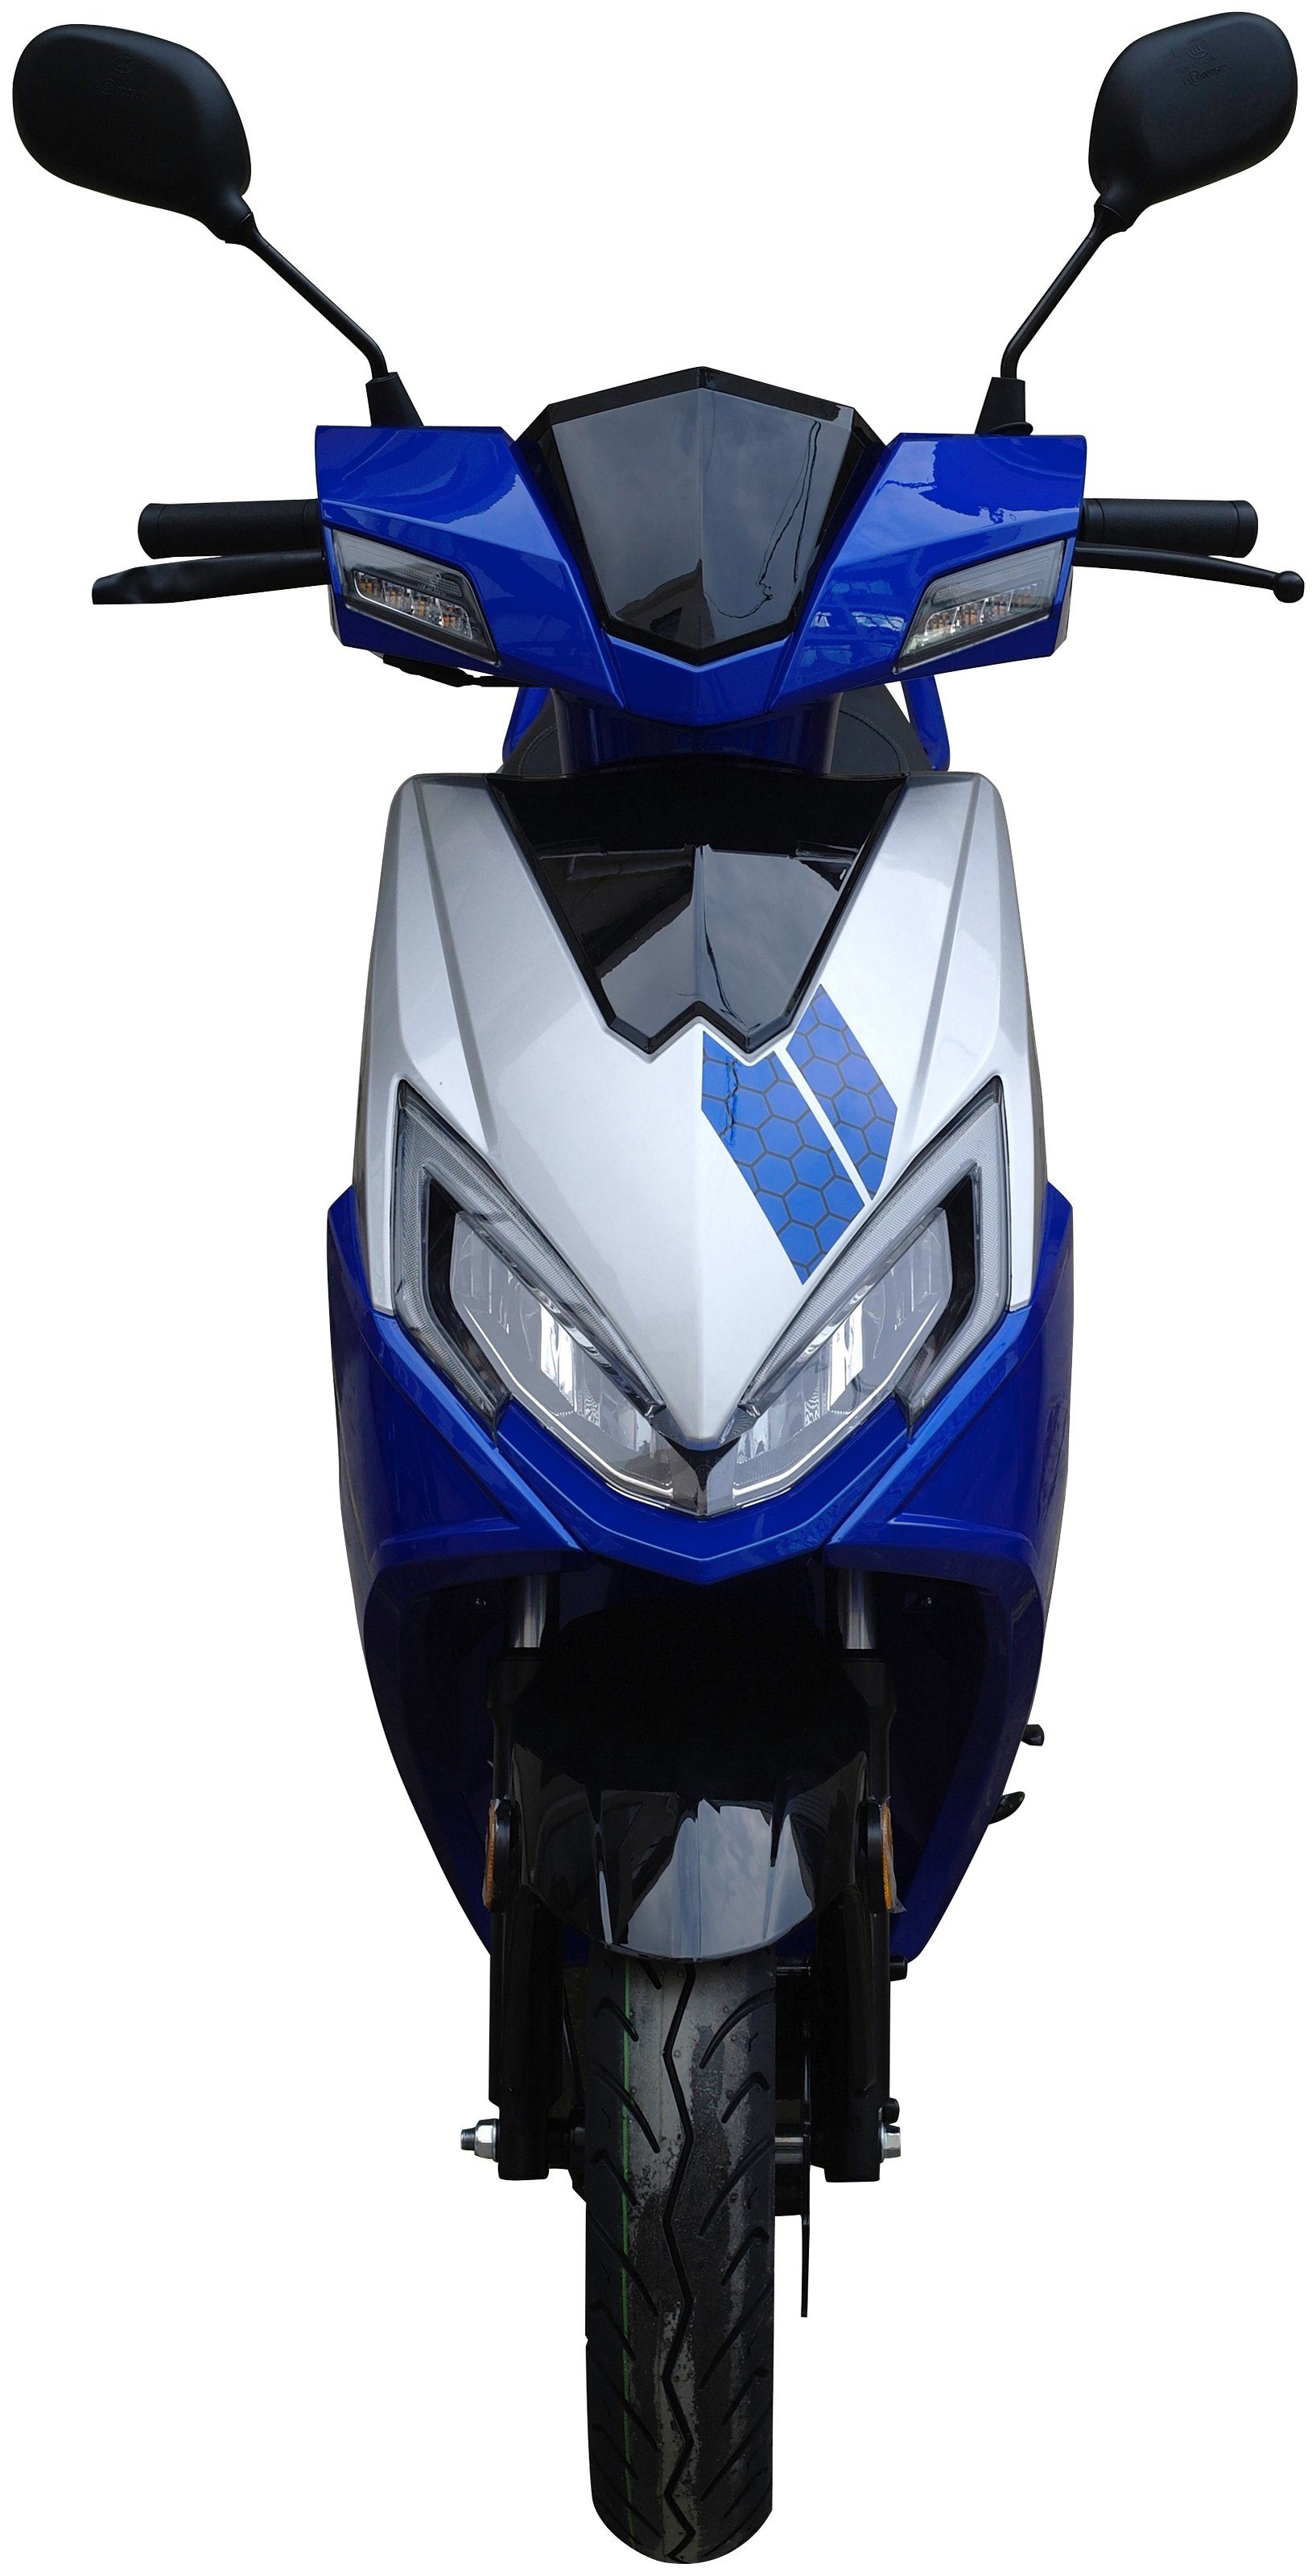 50 Motorroller Sonic X 50-45, 5 km/h, blau ccm, GT UNION Euro 45